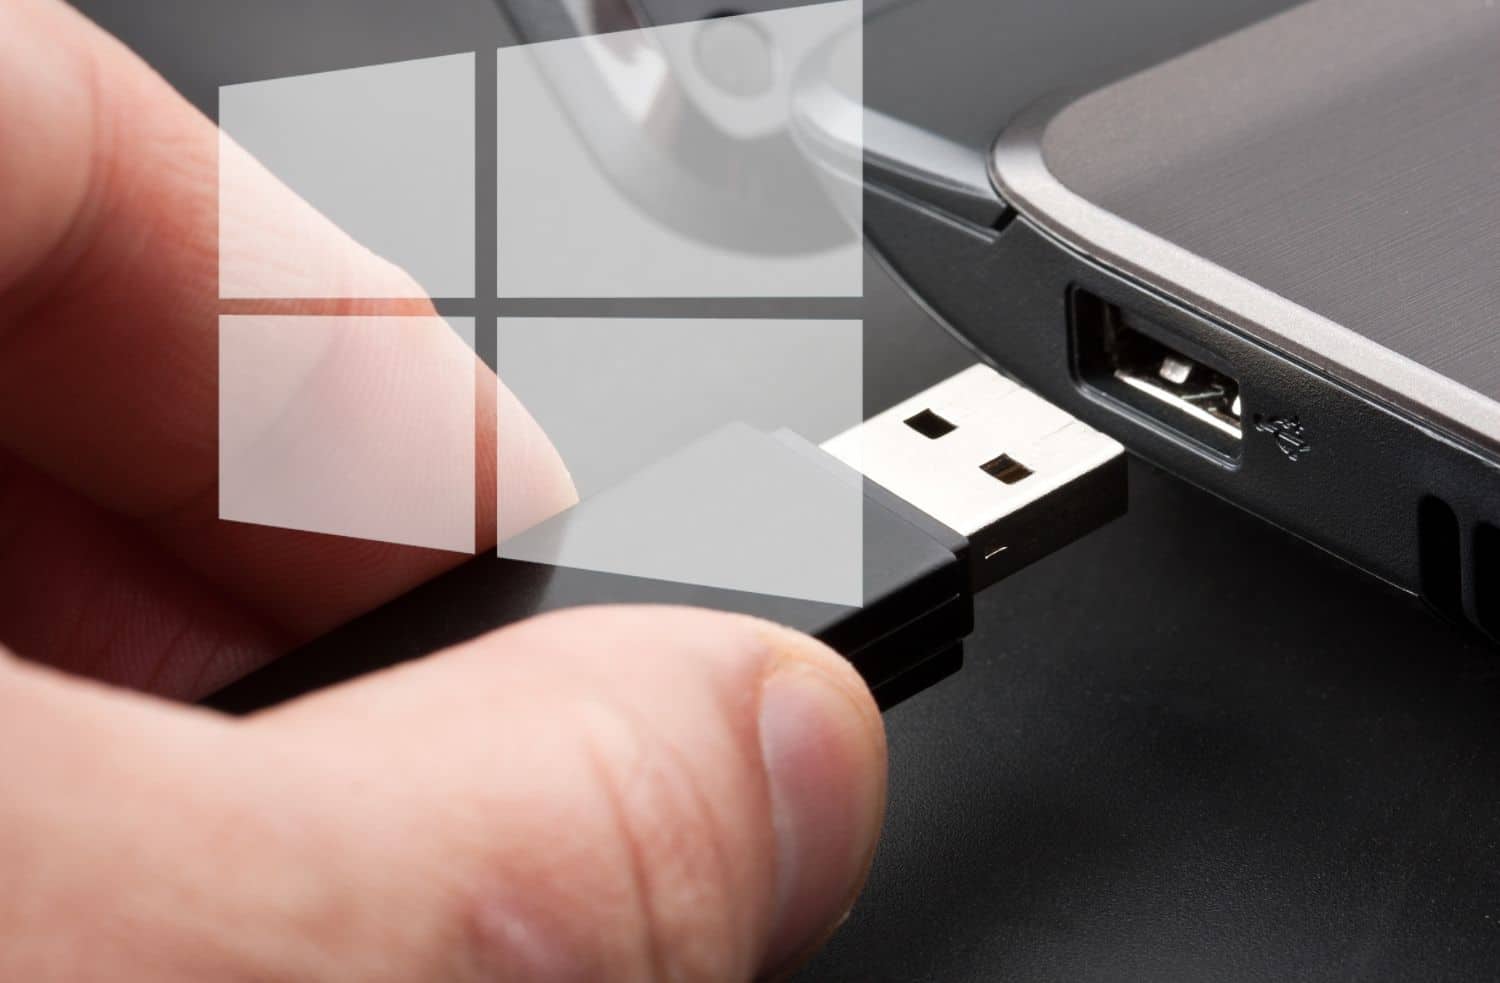 Verifique a conexão do pendrive USB com a porta USB do computador.
Experimente conectar o pendrive em uma porta USB diferente para descartar problemas de porta.